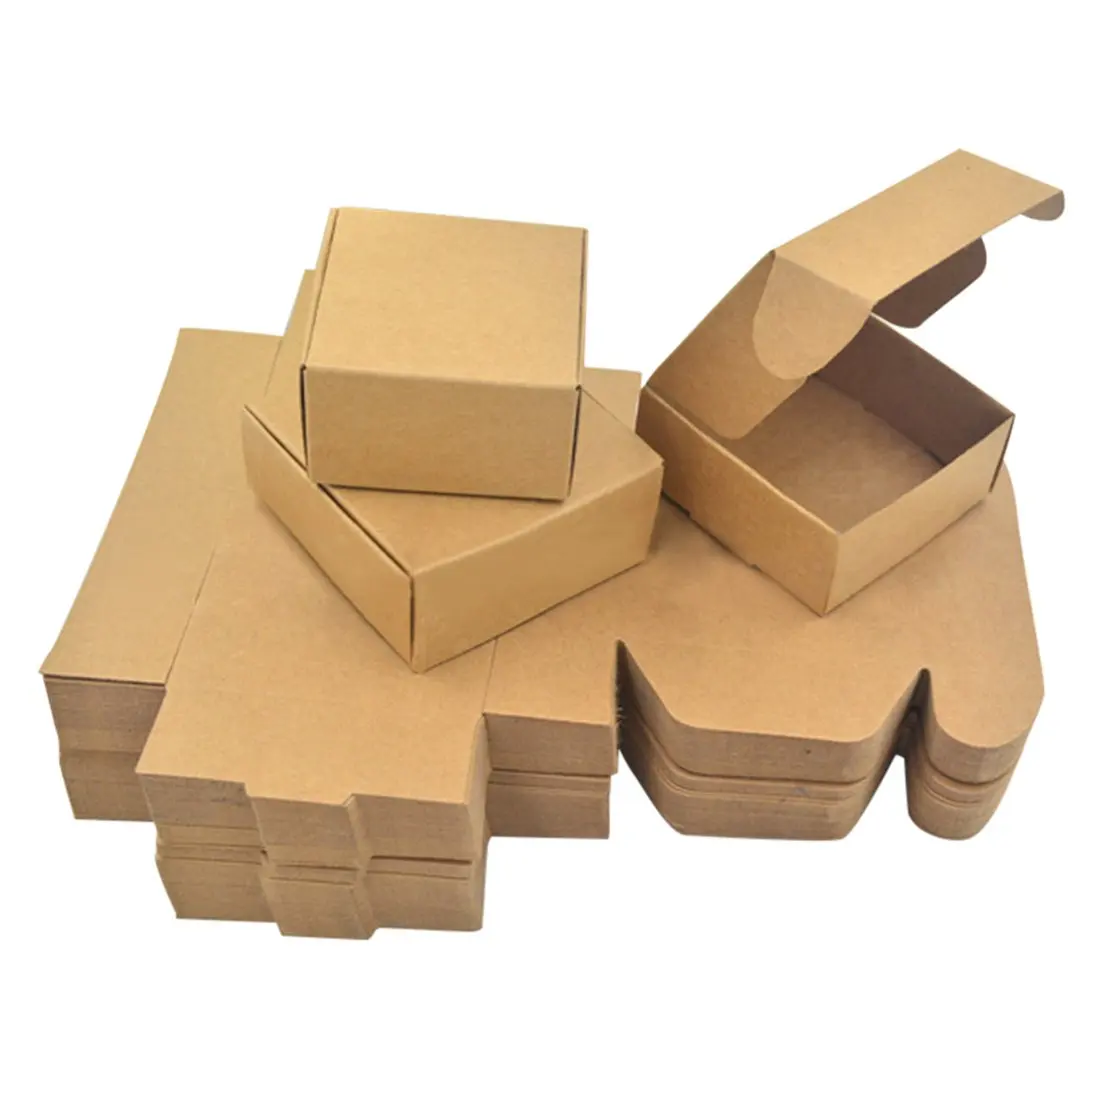 Картонная коробка для подарка. Коробка самосборная крафт 16х16. Картонная коробочка. Маленькие картонные коробки. Картонные подарочные коробки.